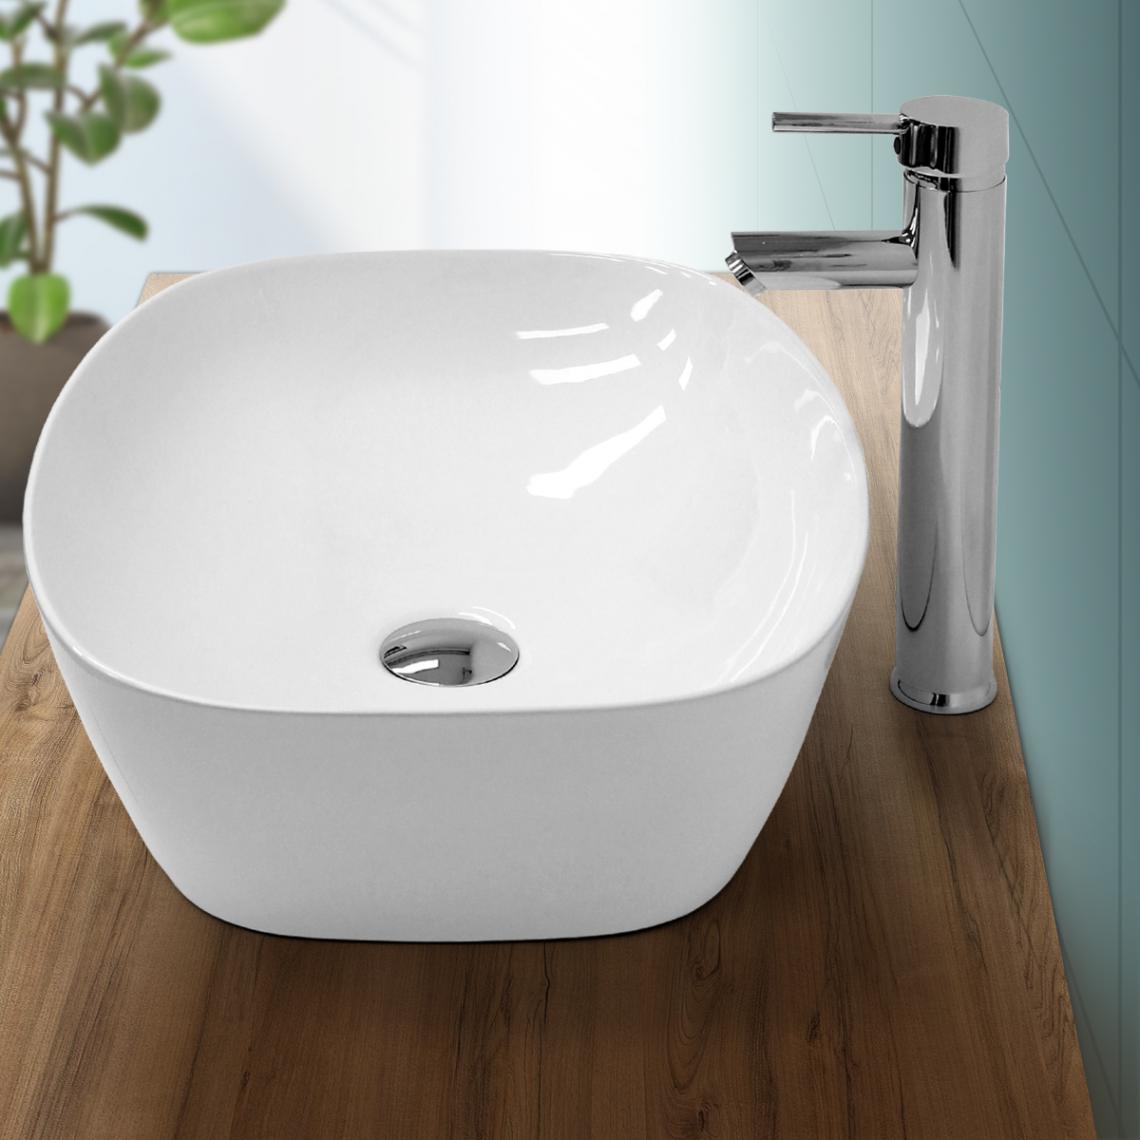 Ecd Germany - Lavabo vasque a poser en céramique blanche évier ovale salle de bain 505x385 mm - Lavabo